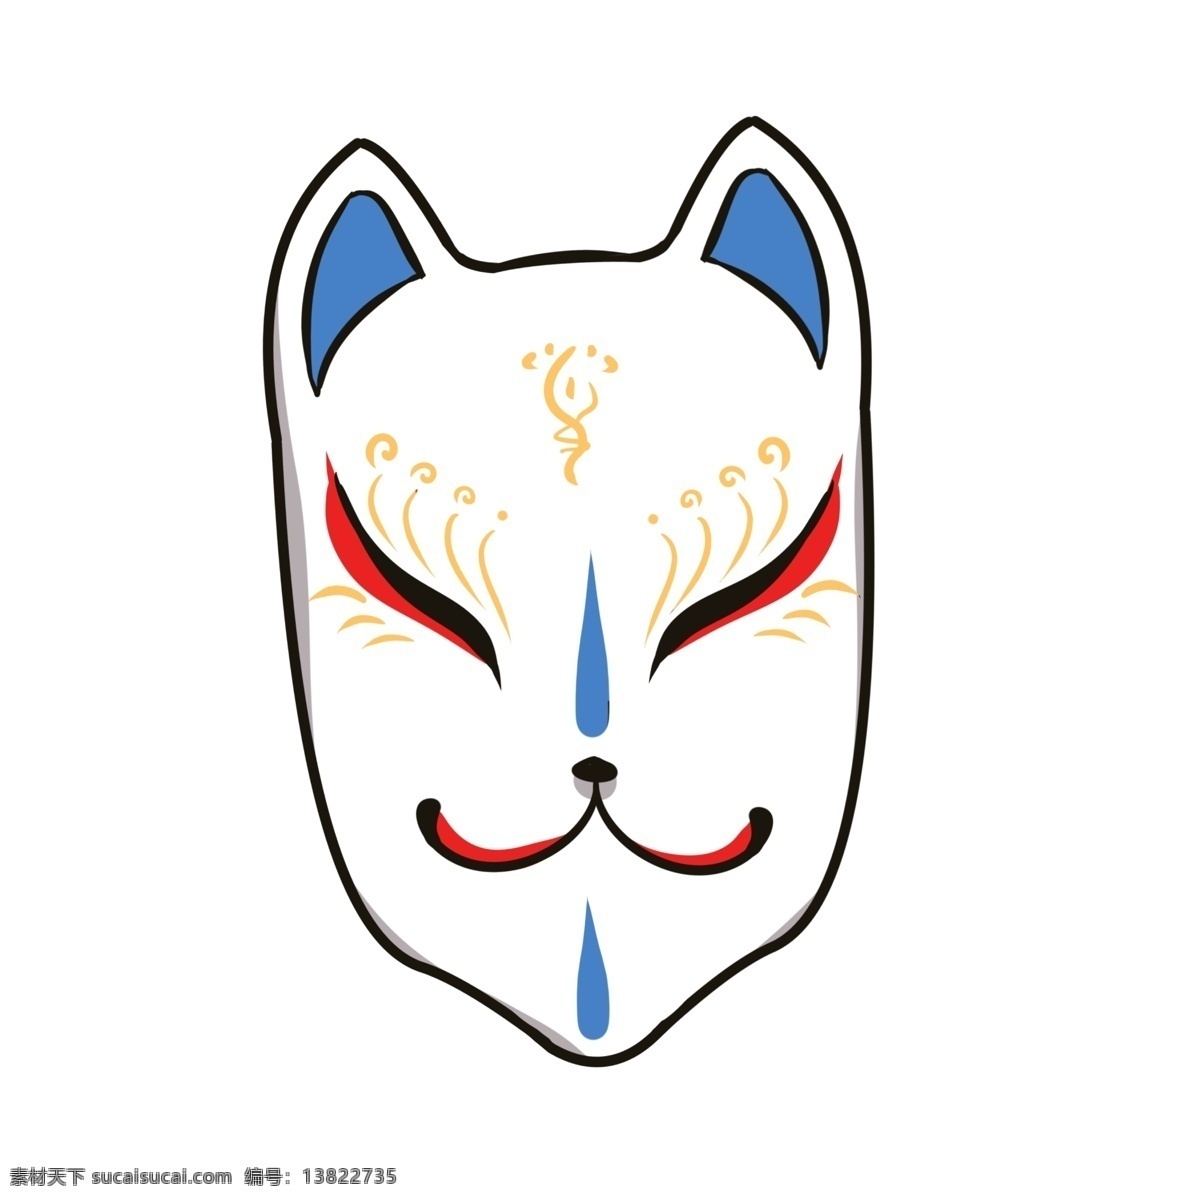 日本 狐狸 面具 插画 狐狸面具 日本面具 可爱的面具 装饰品 日本文化 白色狐狸面具 面具装饰插画